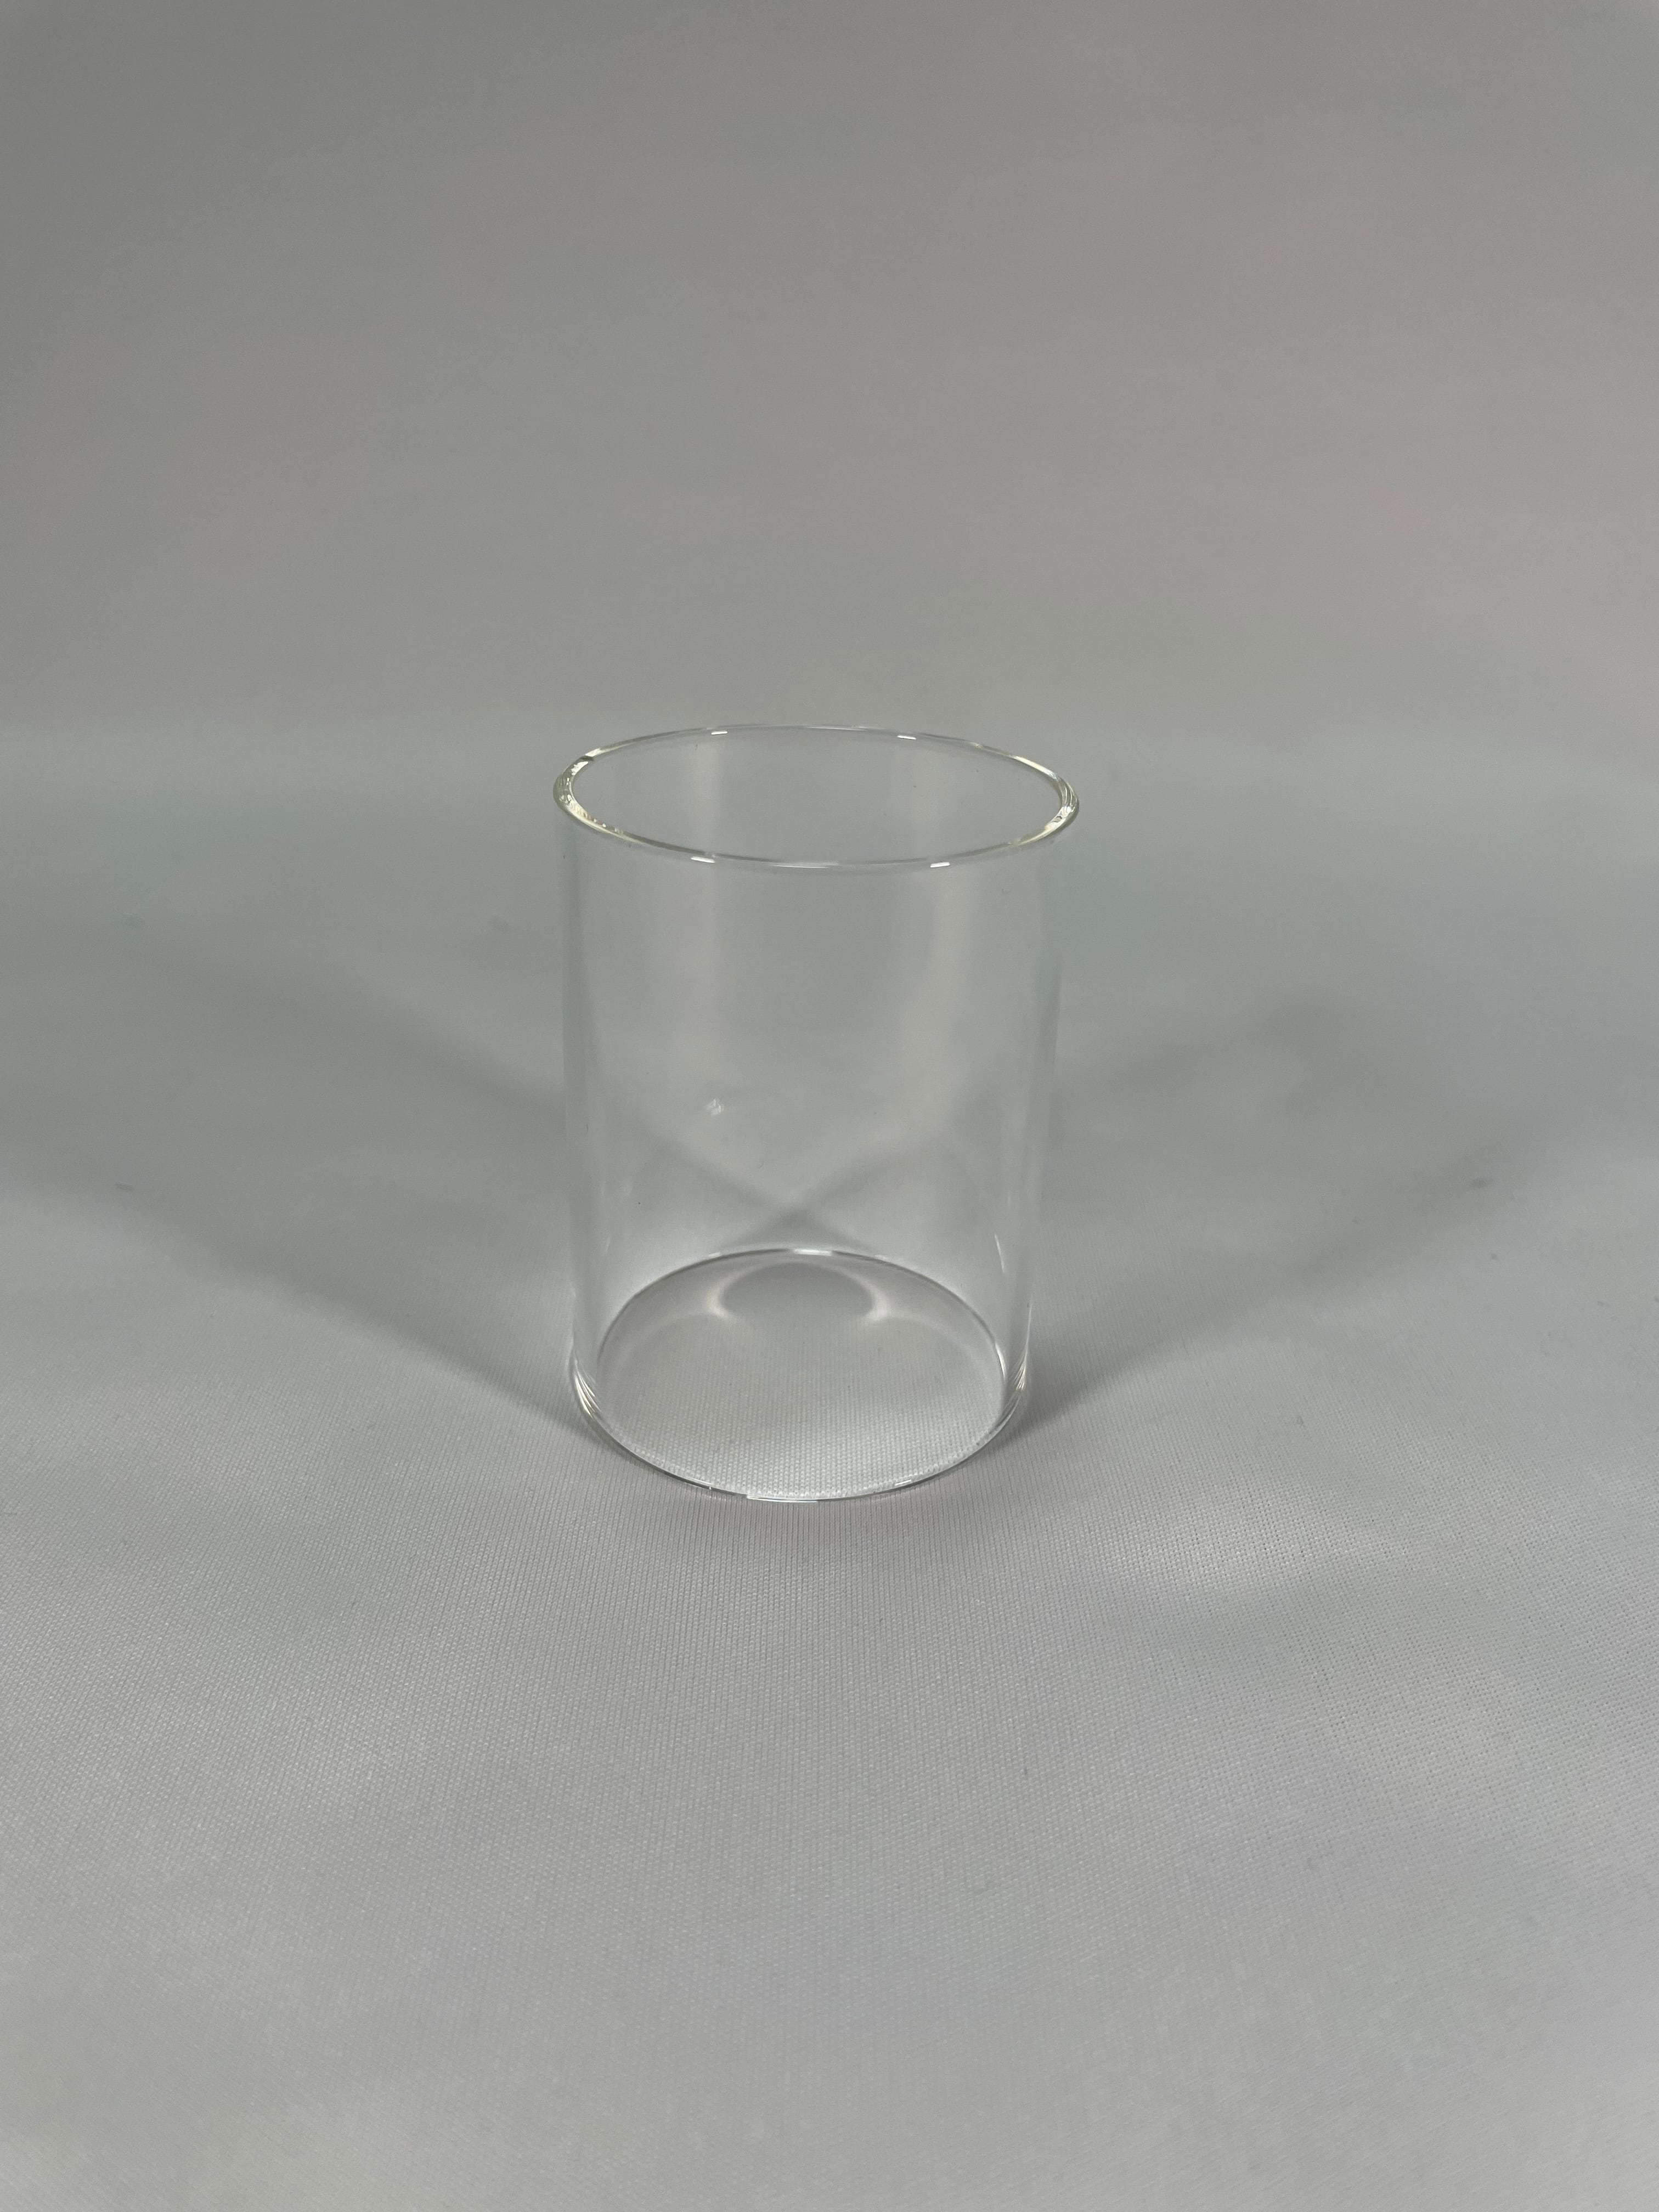 フォレストヒルキャンドルランタン・UCOミニキャンドルランタン用ホヤガラス(硬質1級耐熱ガラス)